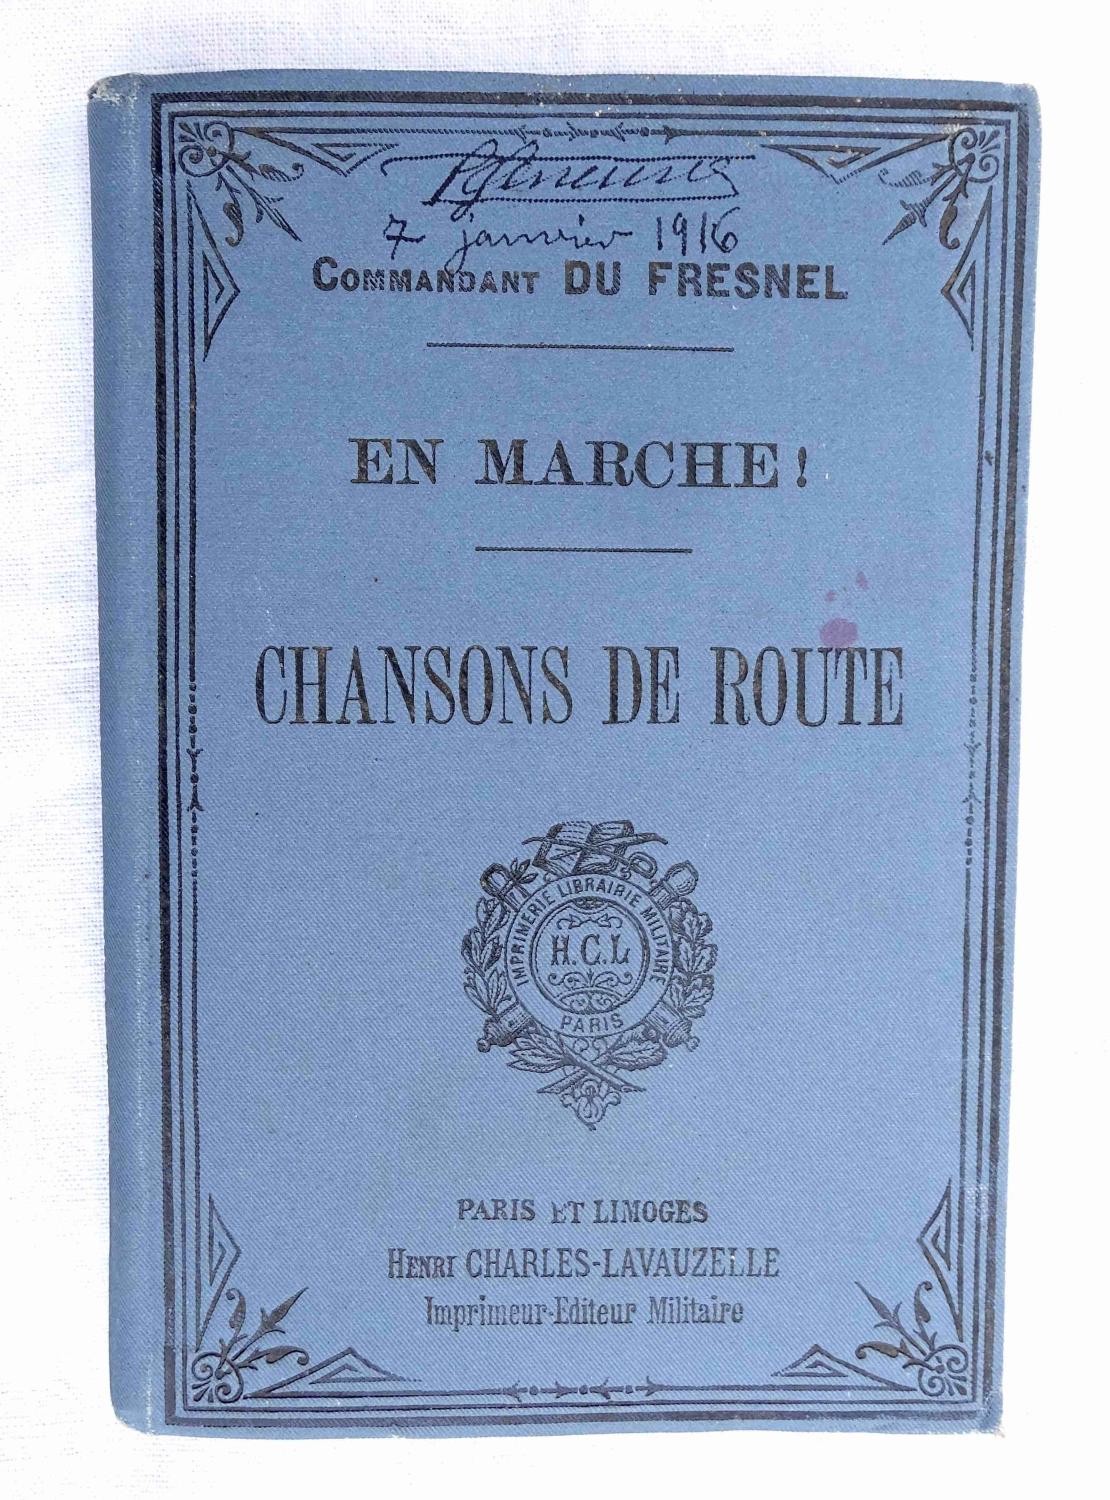 En marche !  Chansons de route. Commandant Du Fresnel   1916